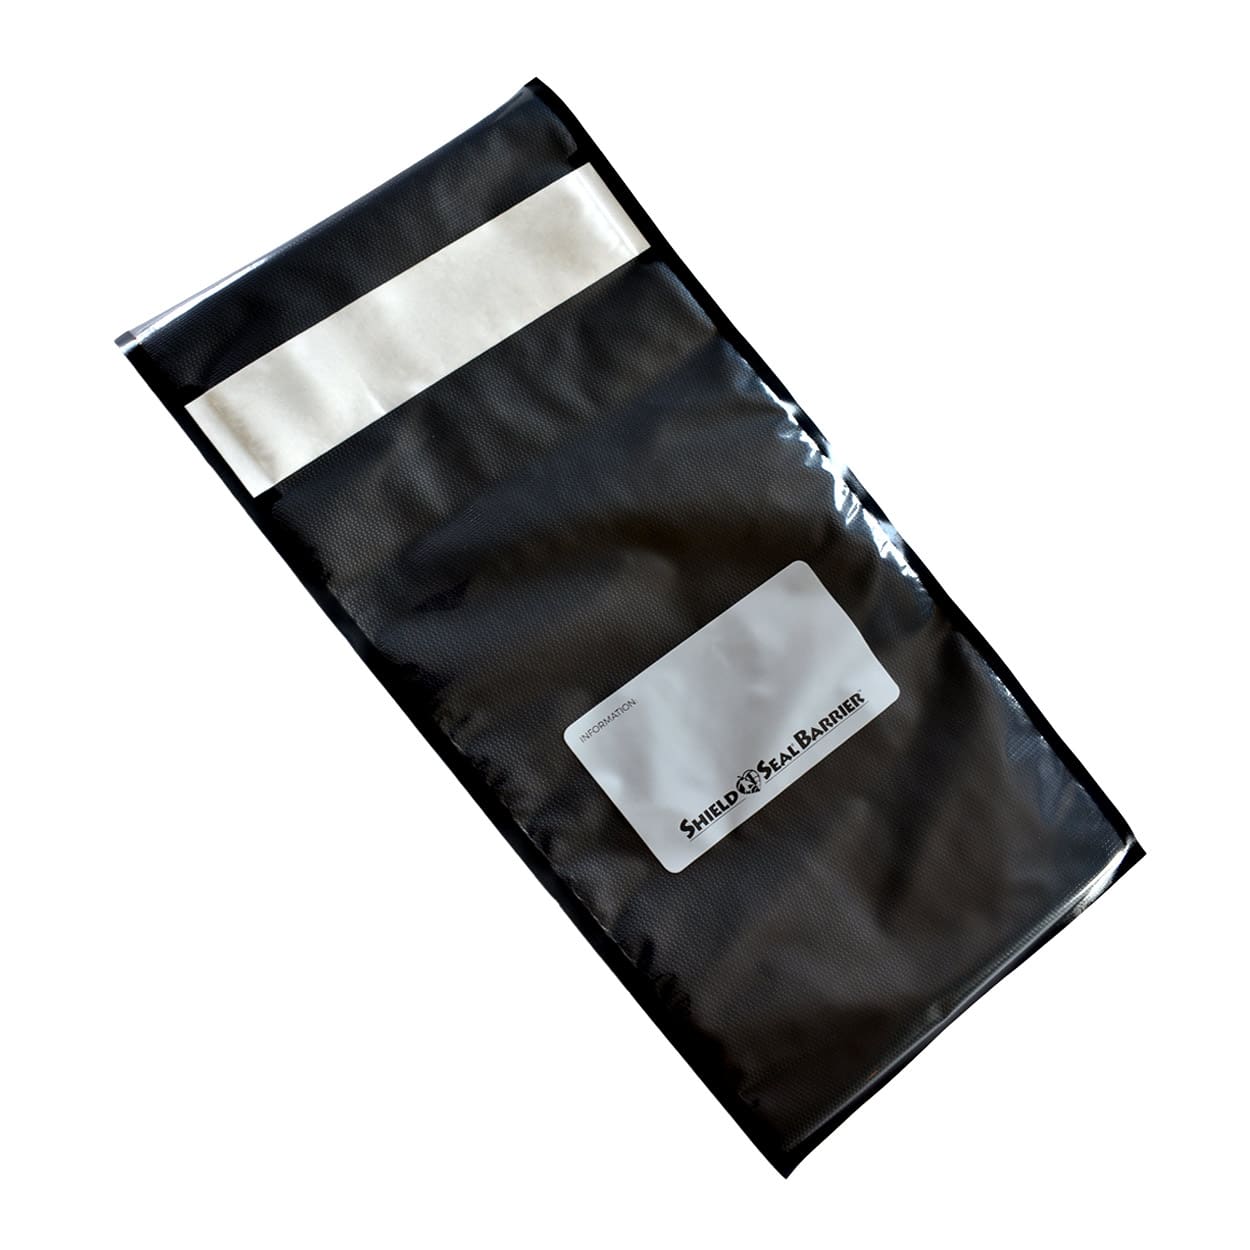 StashBags – 11.5″ x 24″ Black & Clear Pre-Cut Vacuum Seal Bags w